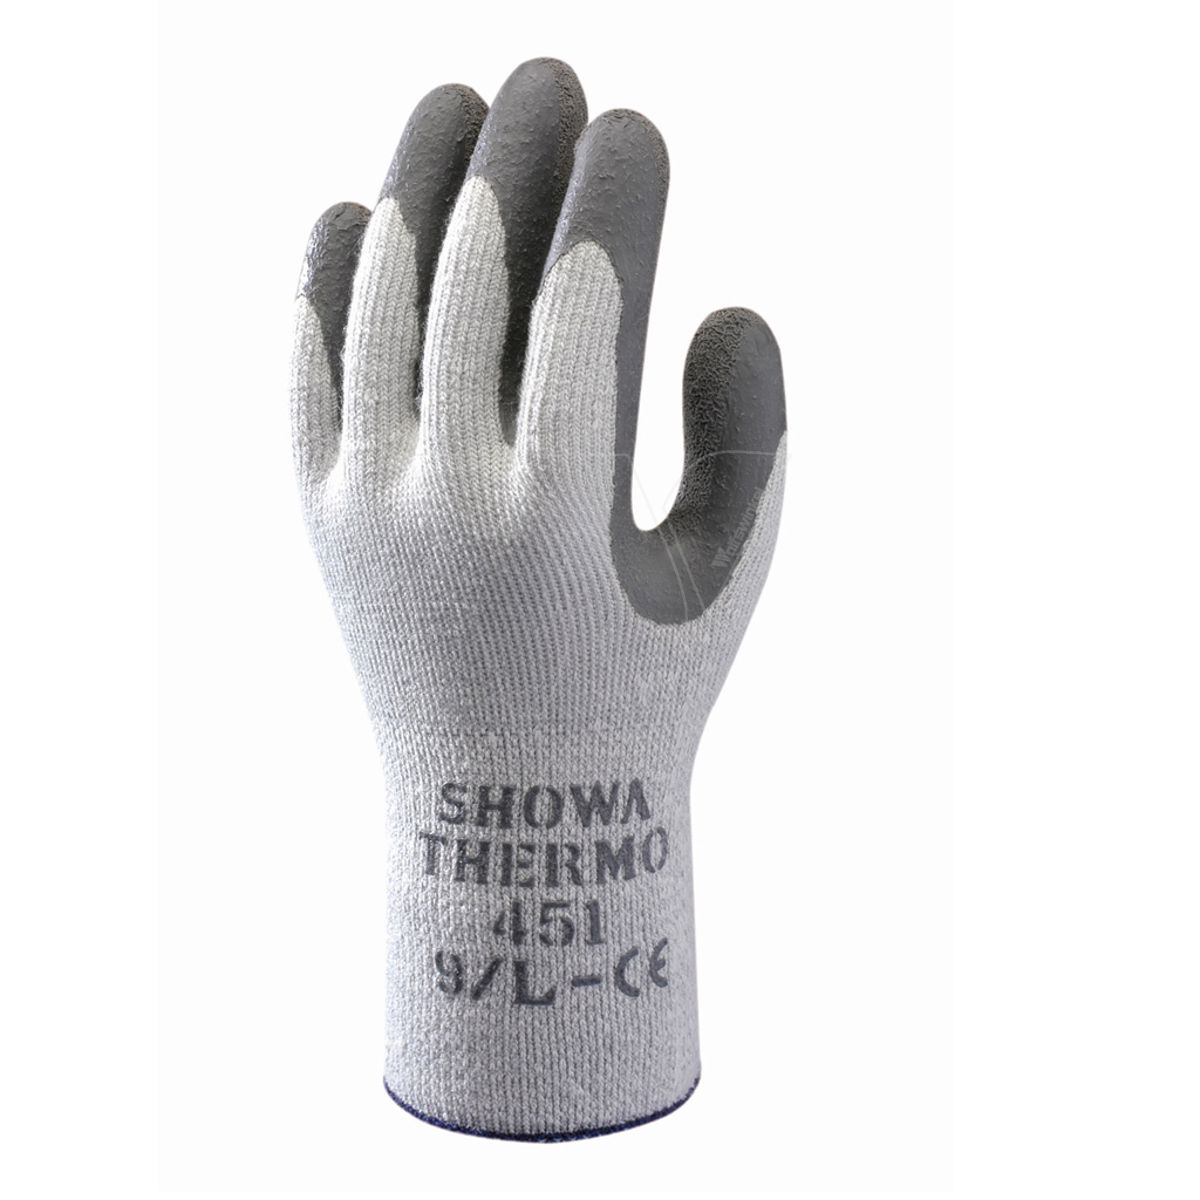 Showa thermo 451 work glove l